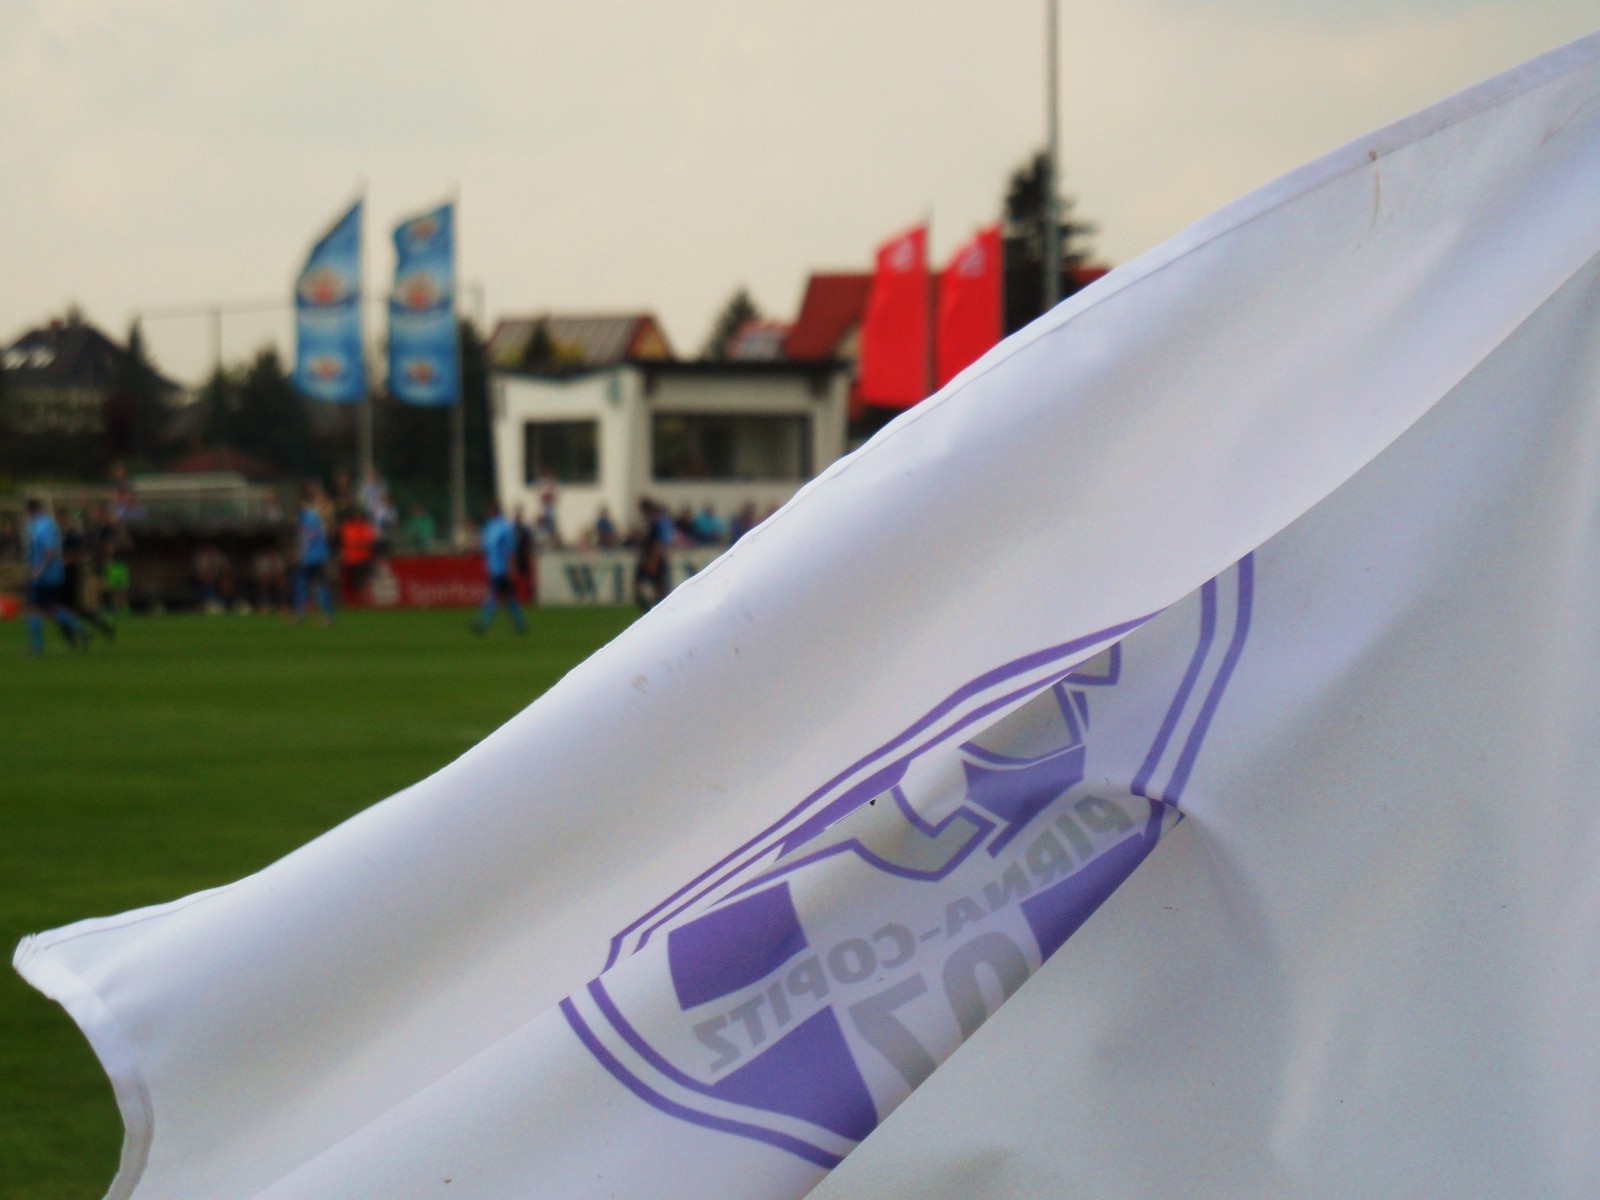 VfL Pirna-Copitz - Fußball ist unsere Leidenschaft. Foto: VfL/rz